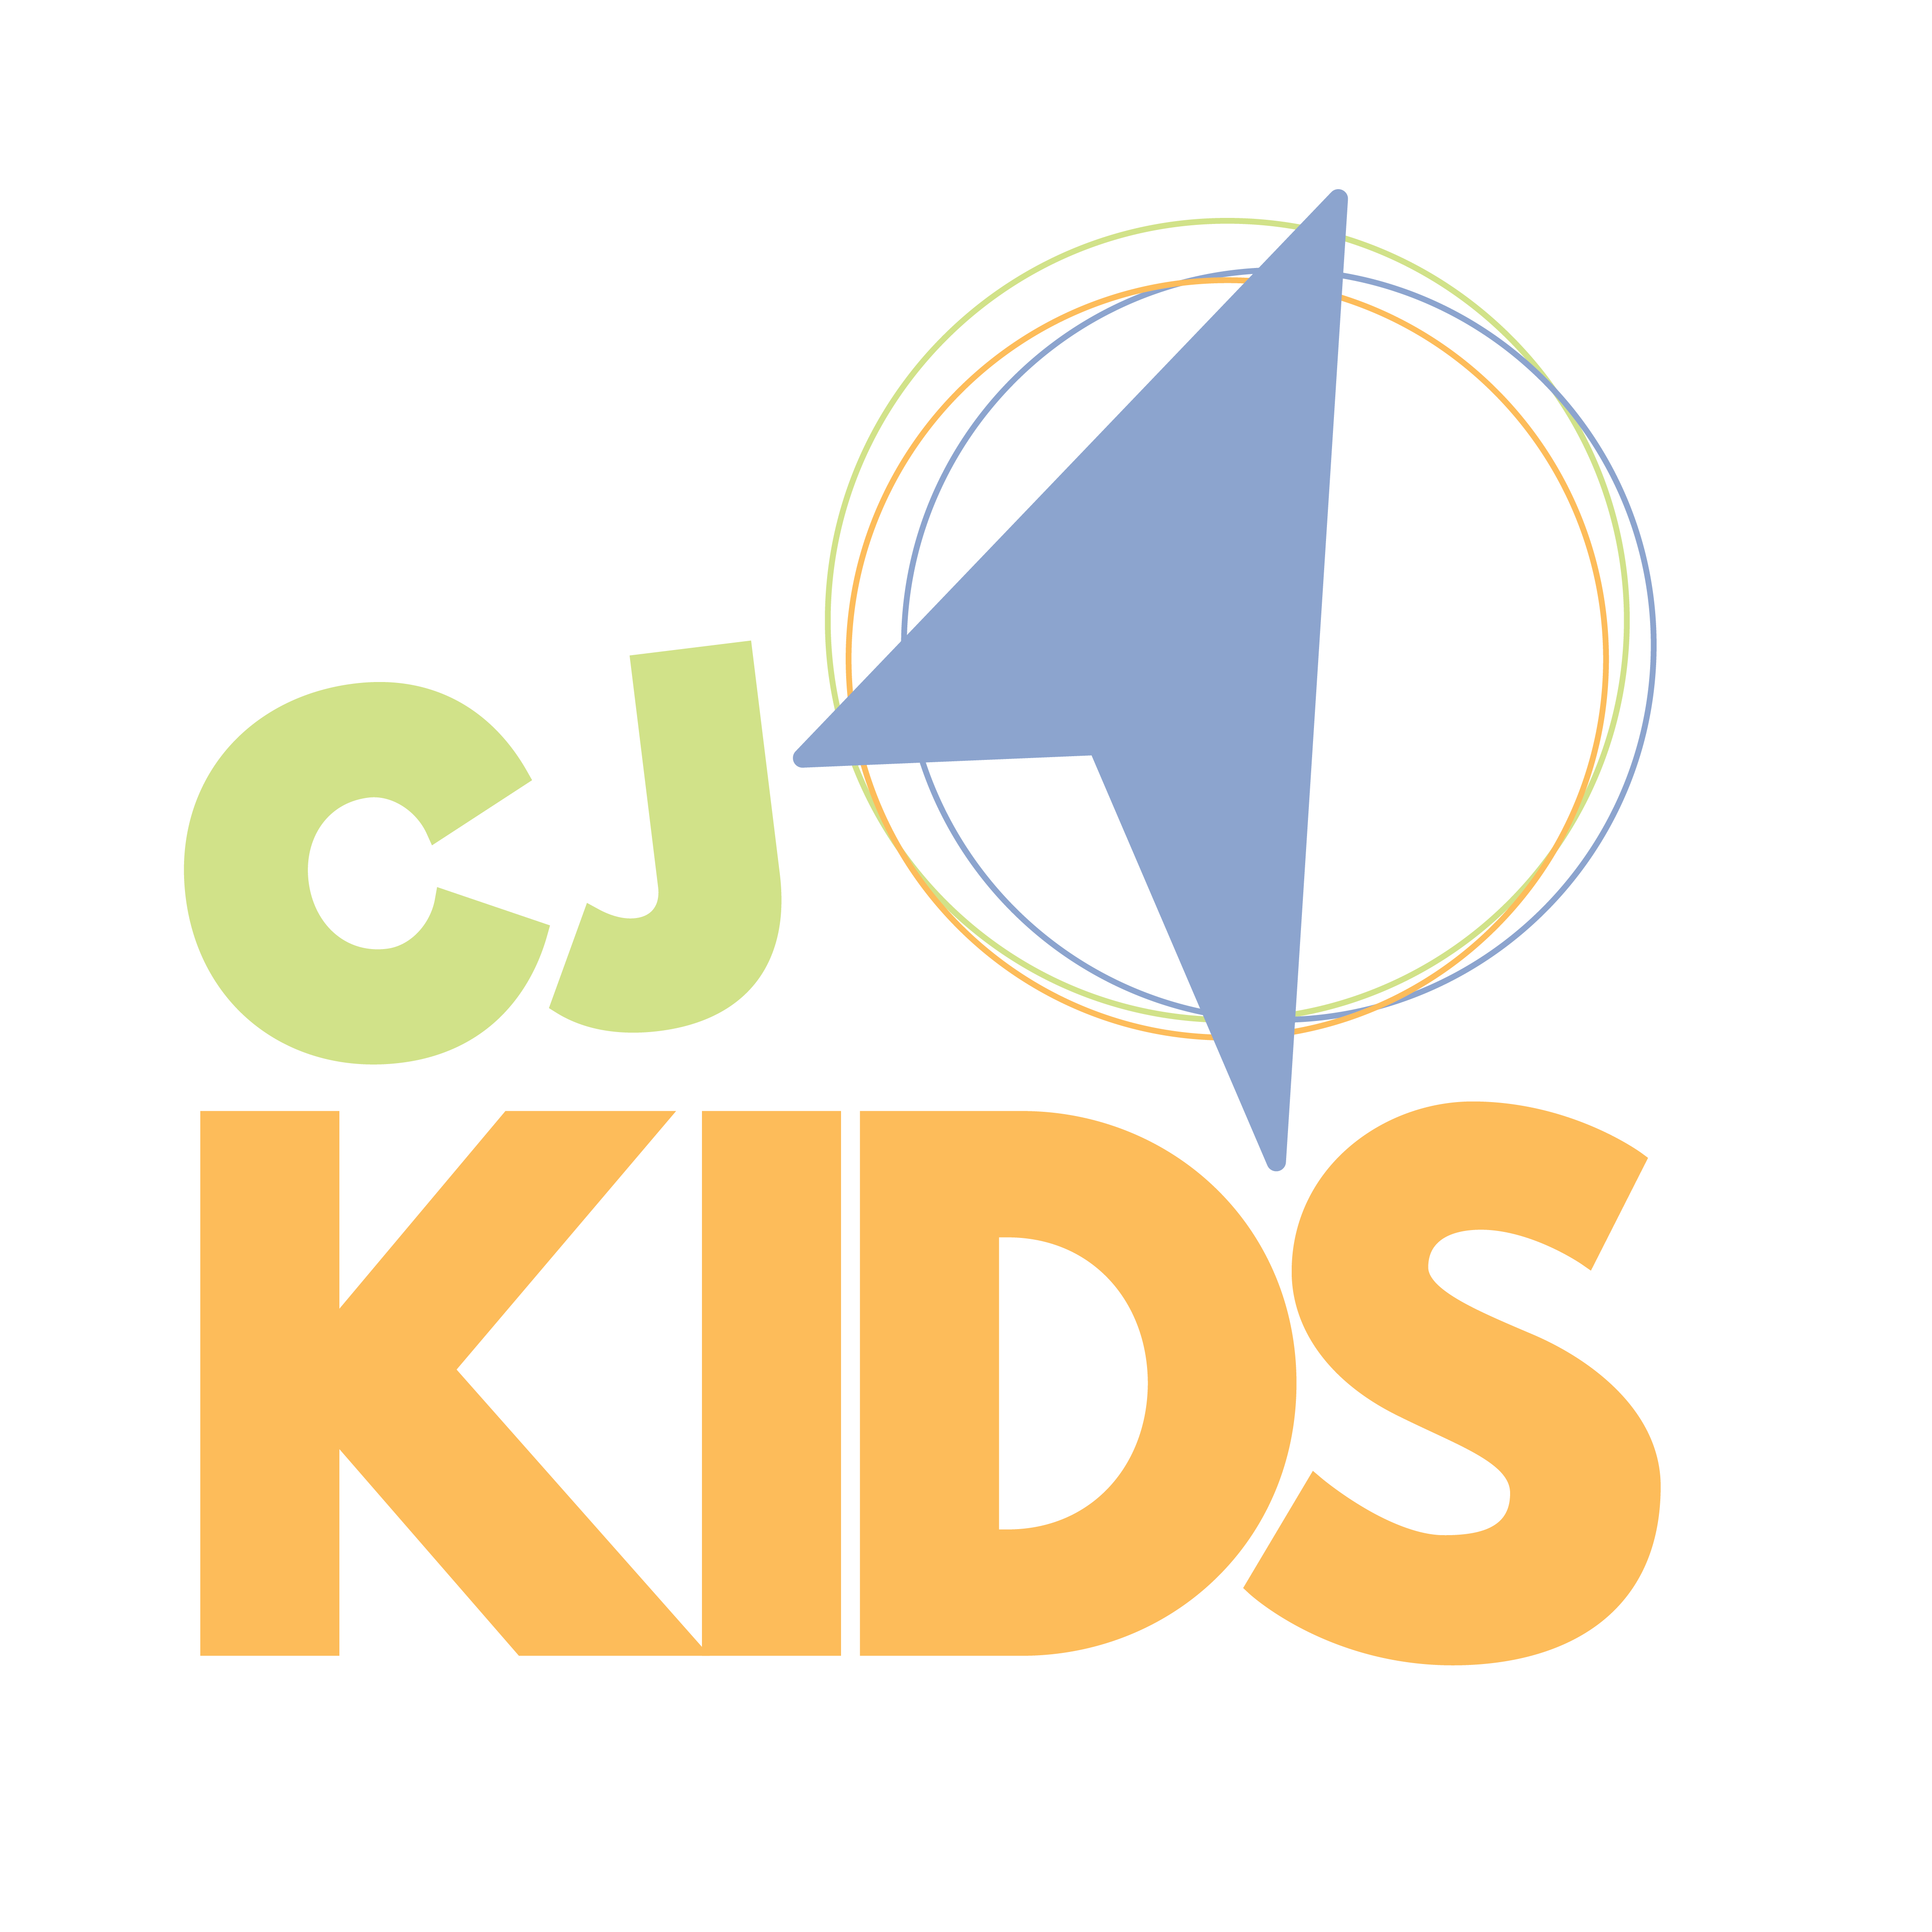 Christ-Journey-Church-CJ Kids Logo Full Color